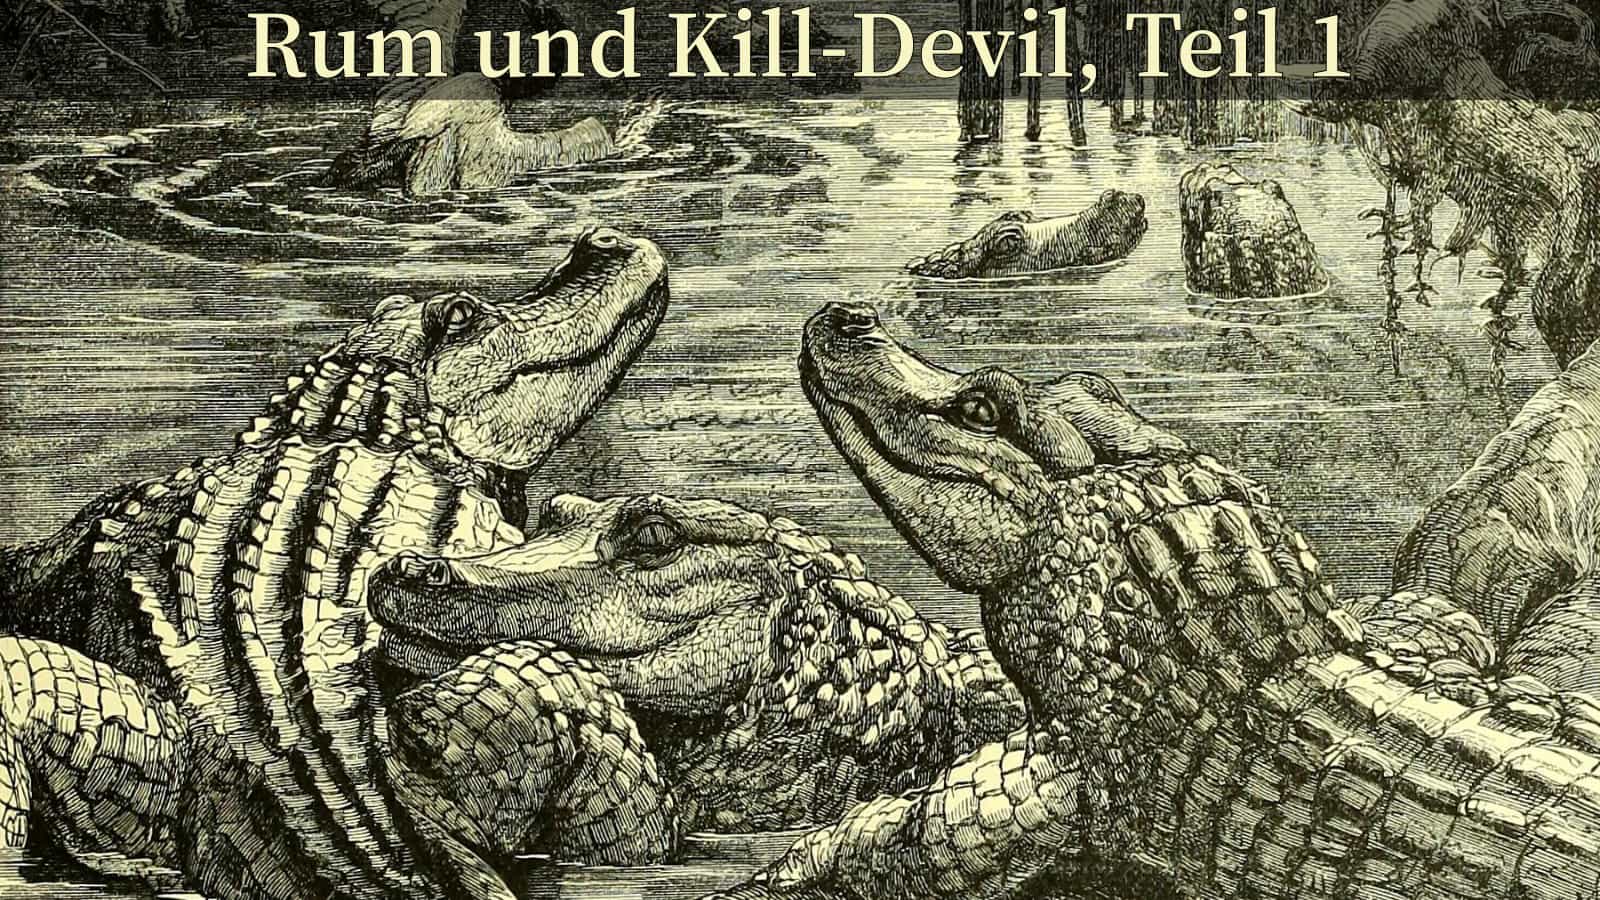 Titelbild - Rum und Kill-Devil, Teil 1.